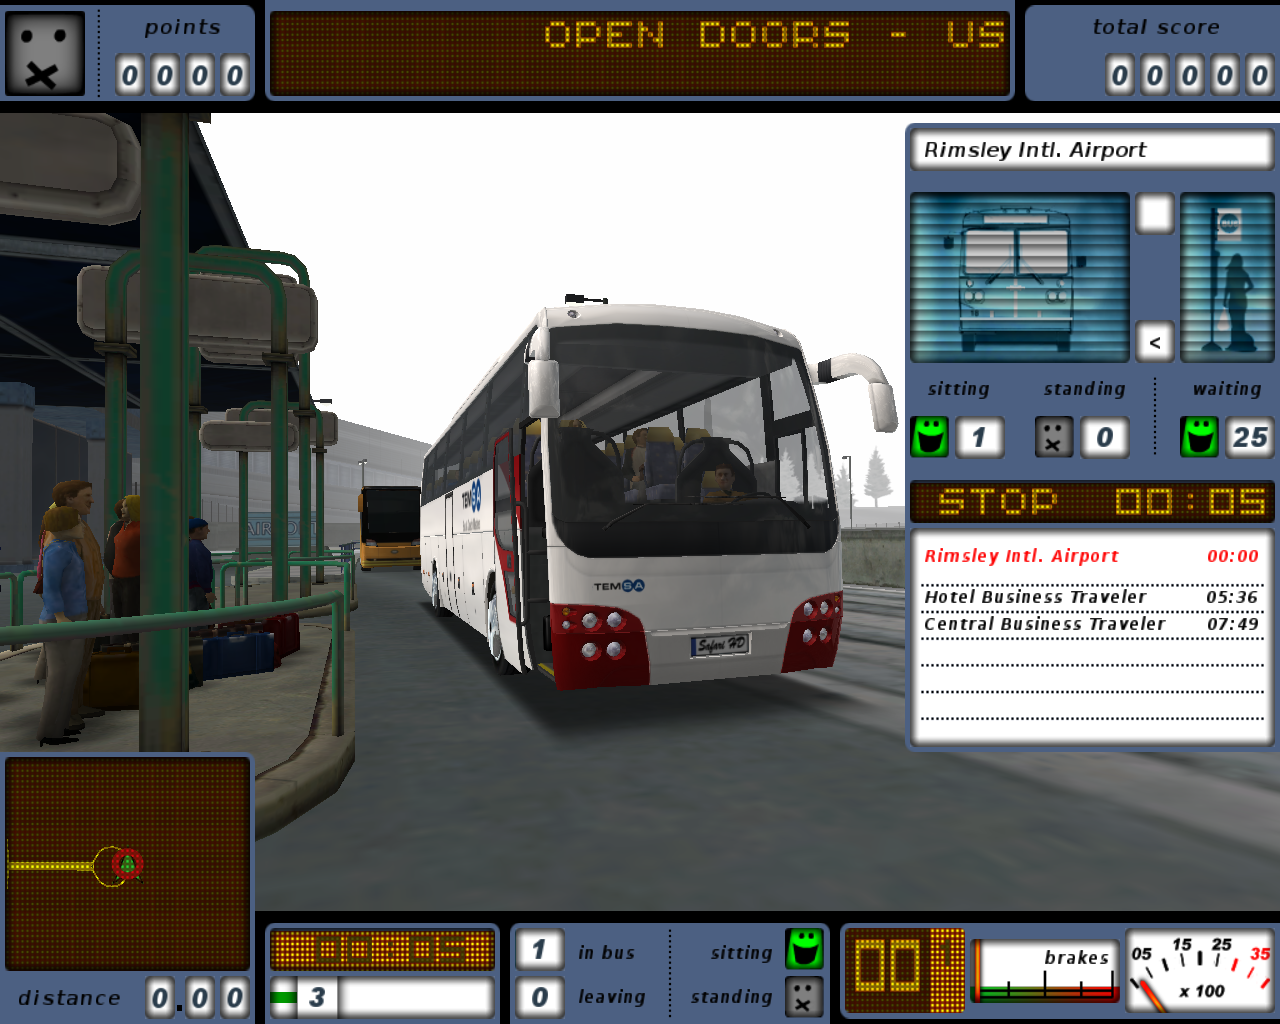 school bus driving games online